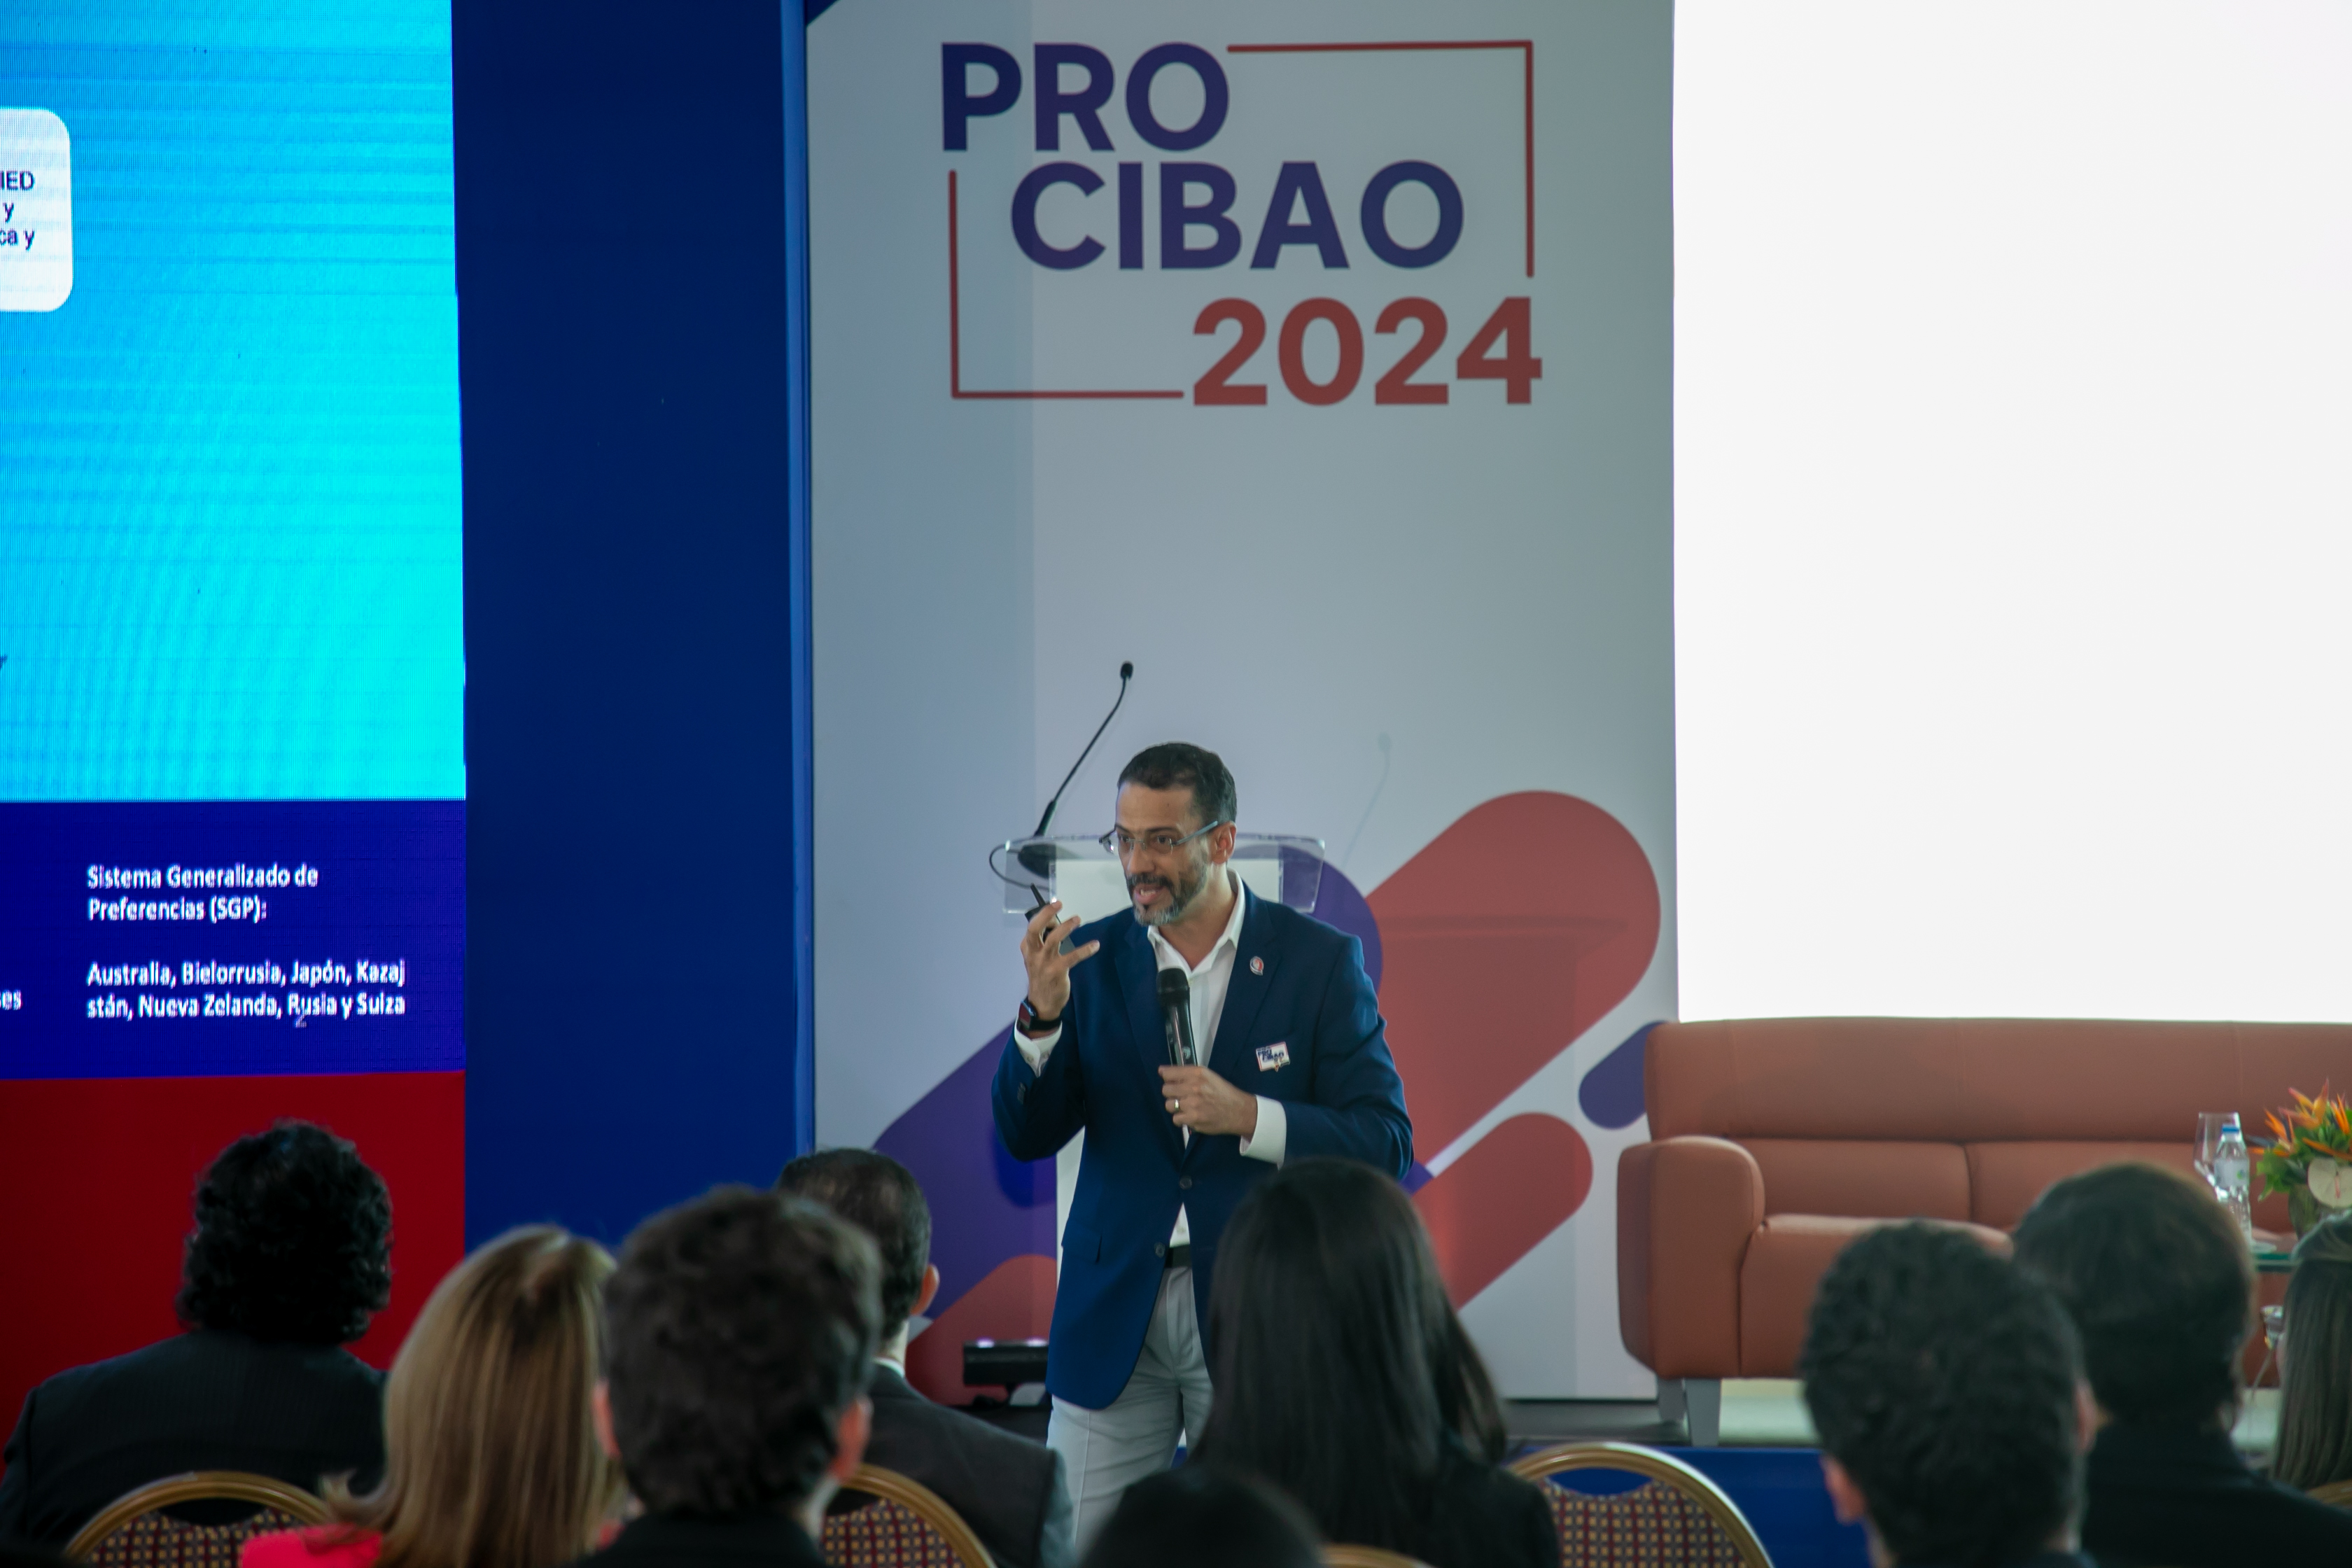 REPÚBLICA DOMINICANA: ProDominicana concluye exitosamente rondas de negocios en ProCibao 2024, con intenciones de compra por más de USD 28 millones